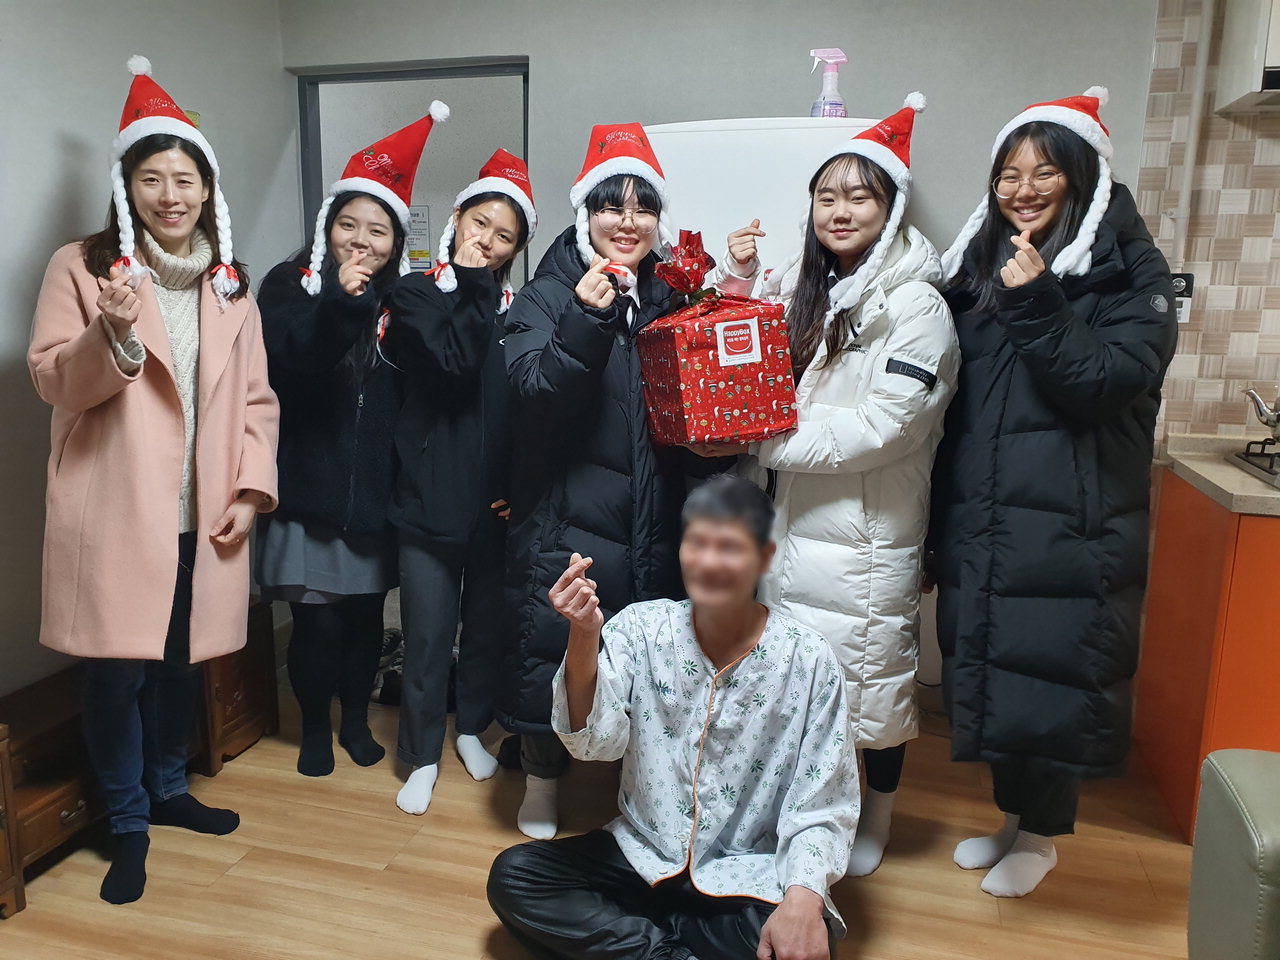 충북여자고등학교 2학년 학생 240명은 26일 청주시 서원구 모충동 저소득층 가구 2곳을 방문해 각각 30만원 상당의 크리스마스 선물을 전달했다.